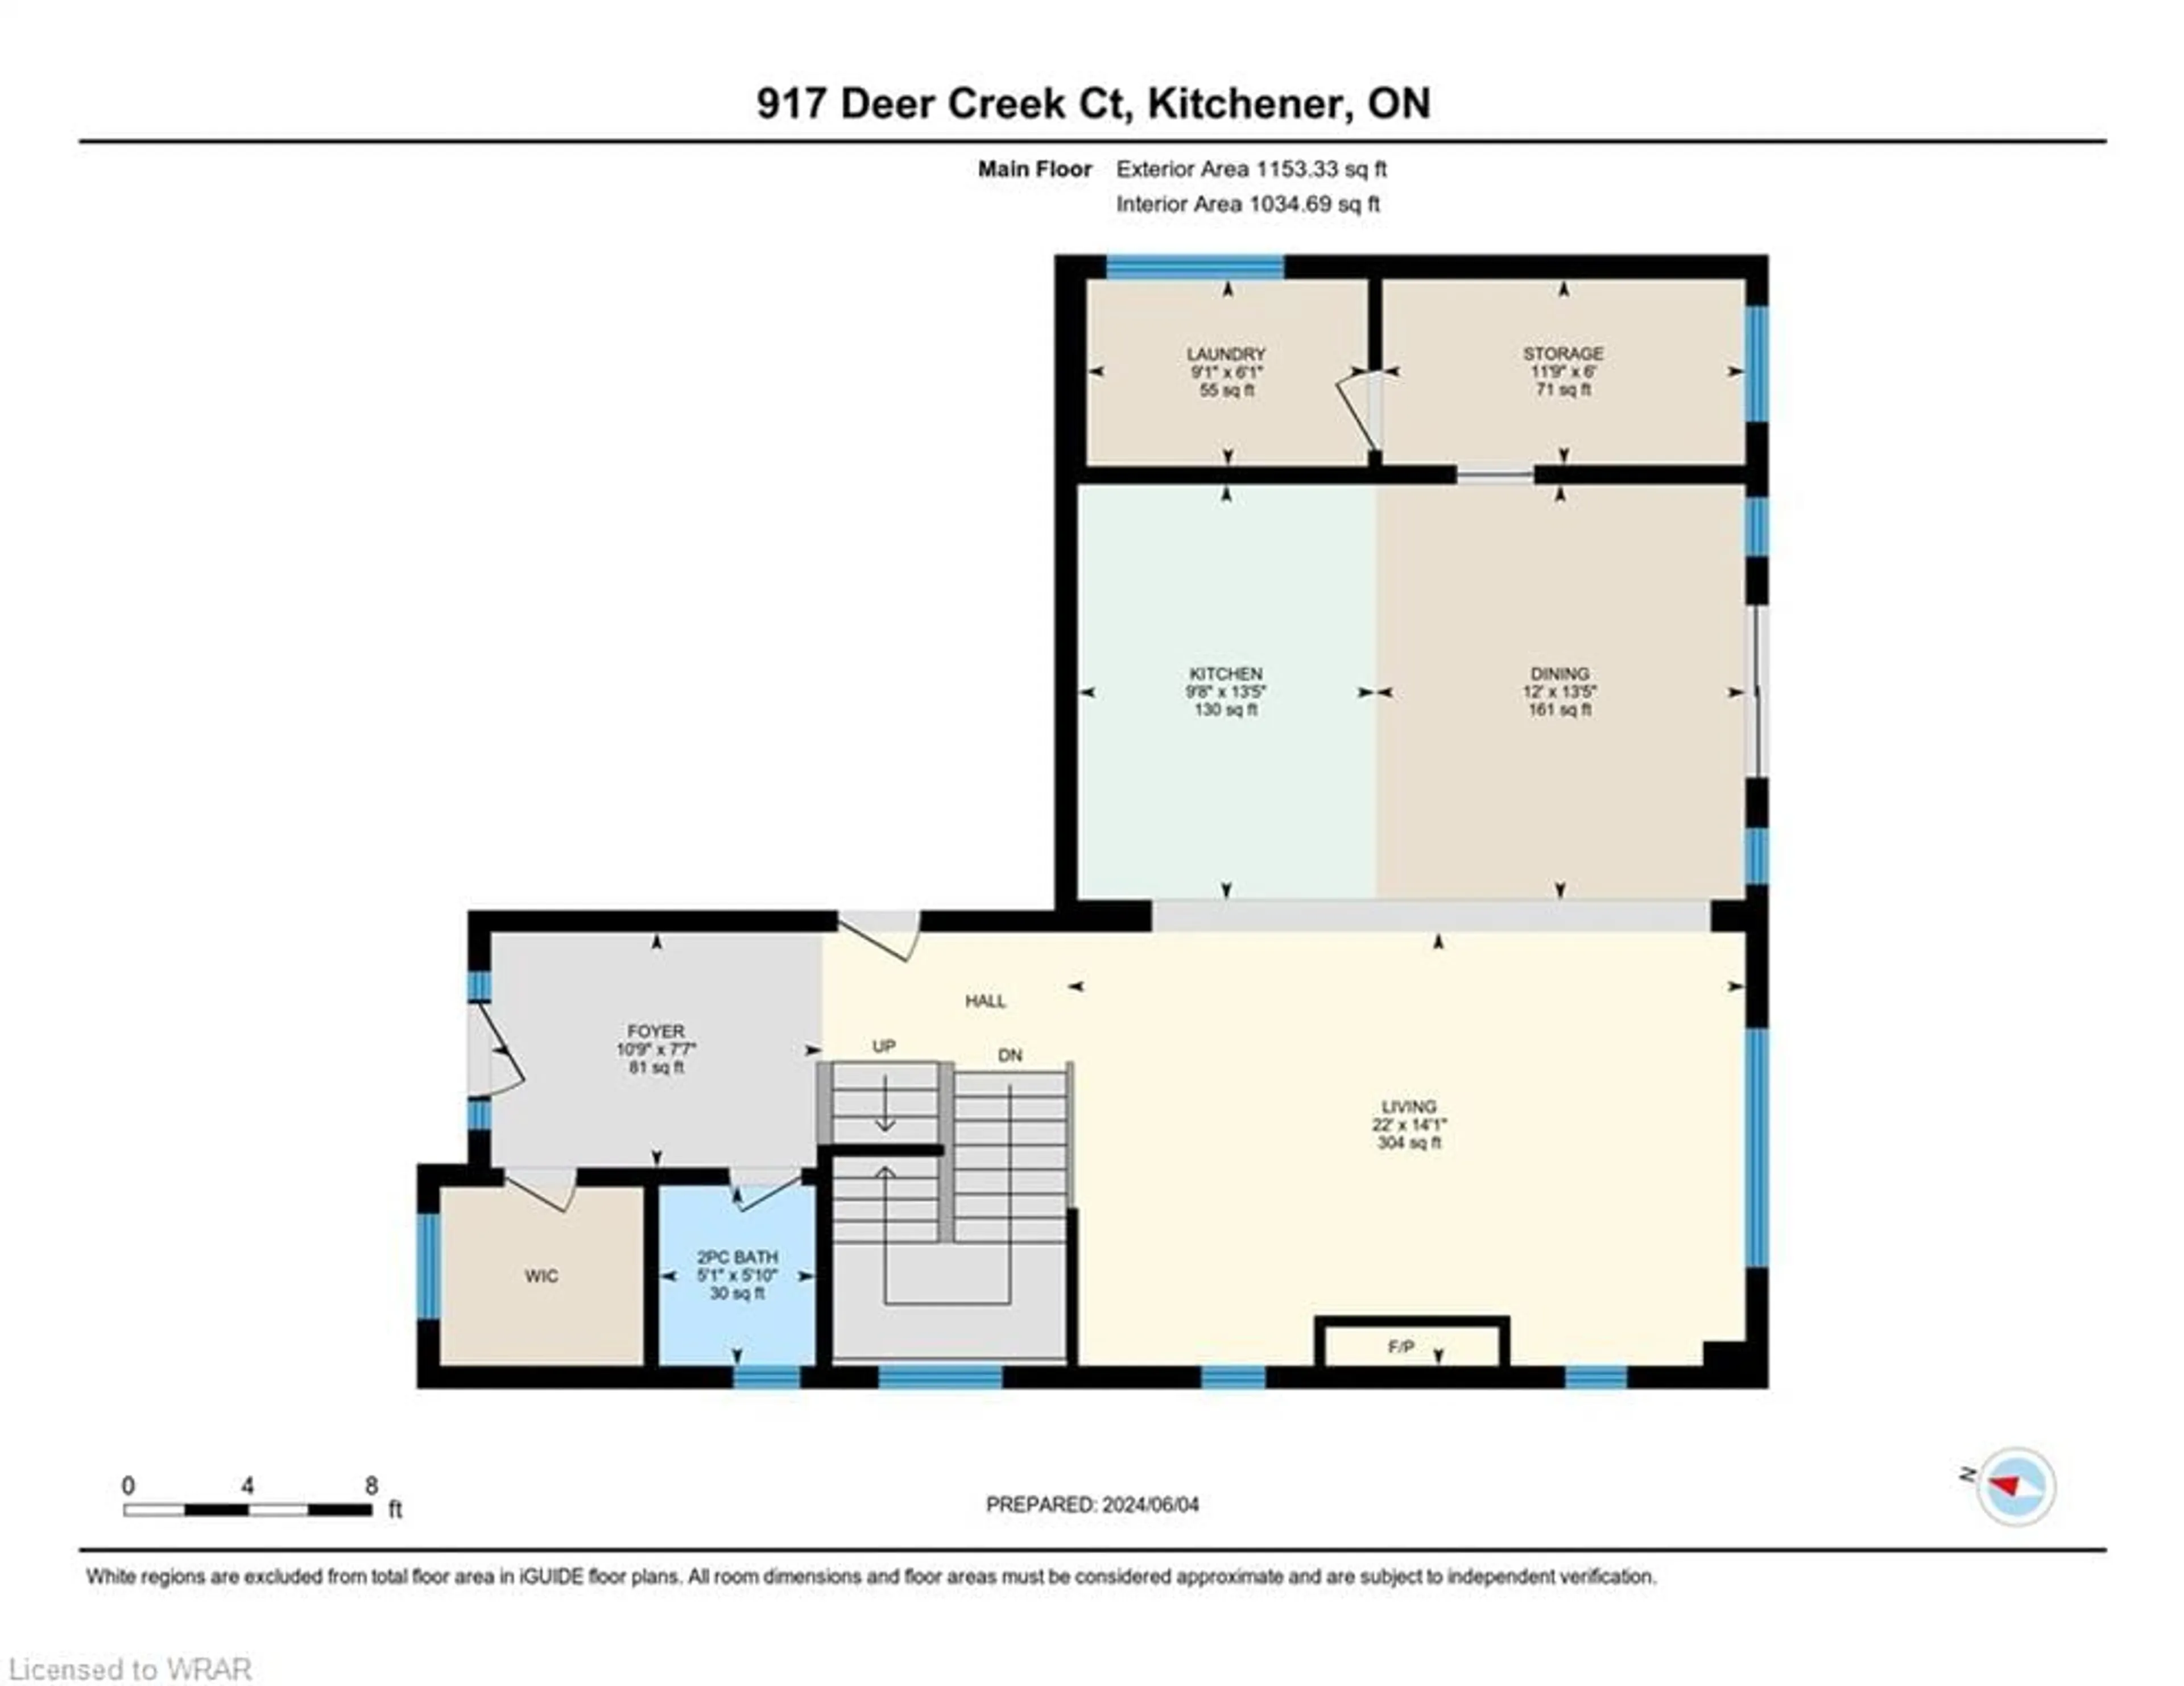 Floor plan for 917 Deer Creek Crt, Kitchener Ontario N2A 0J5